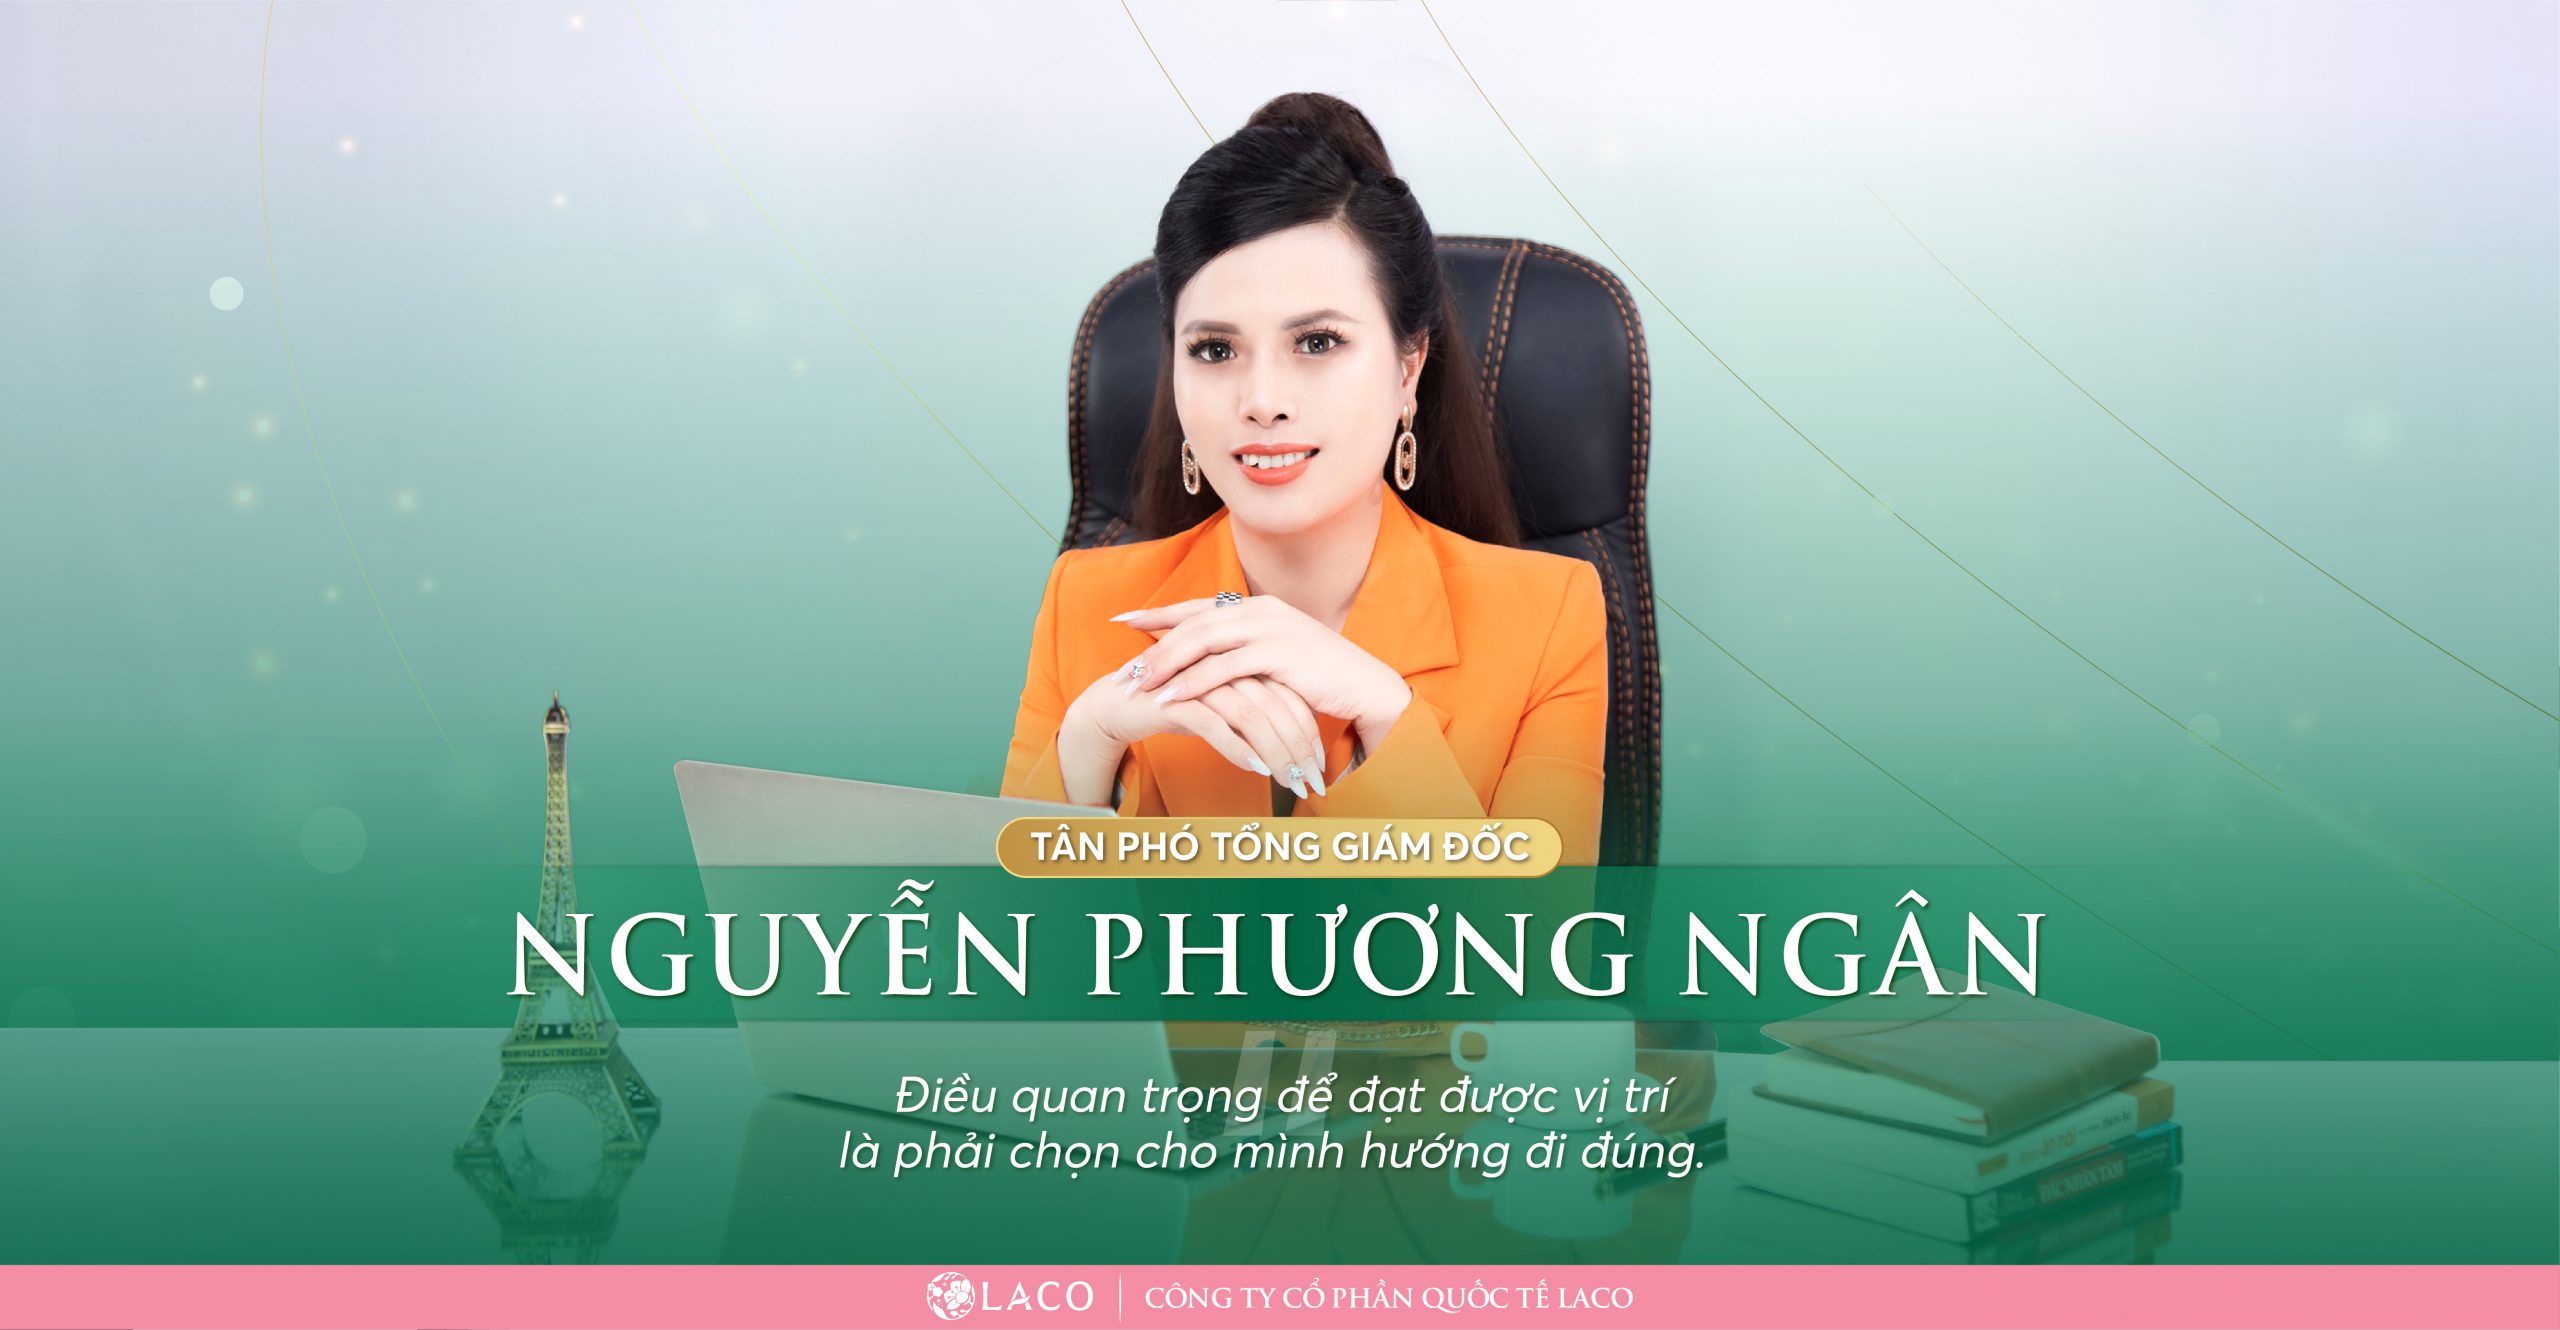 Tân Phó Tổng Giám đốc Nguyễn Phương Ngân: Nấc thang mới, cương vị mới, trọng trách mới